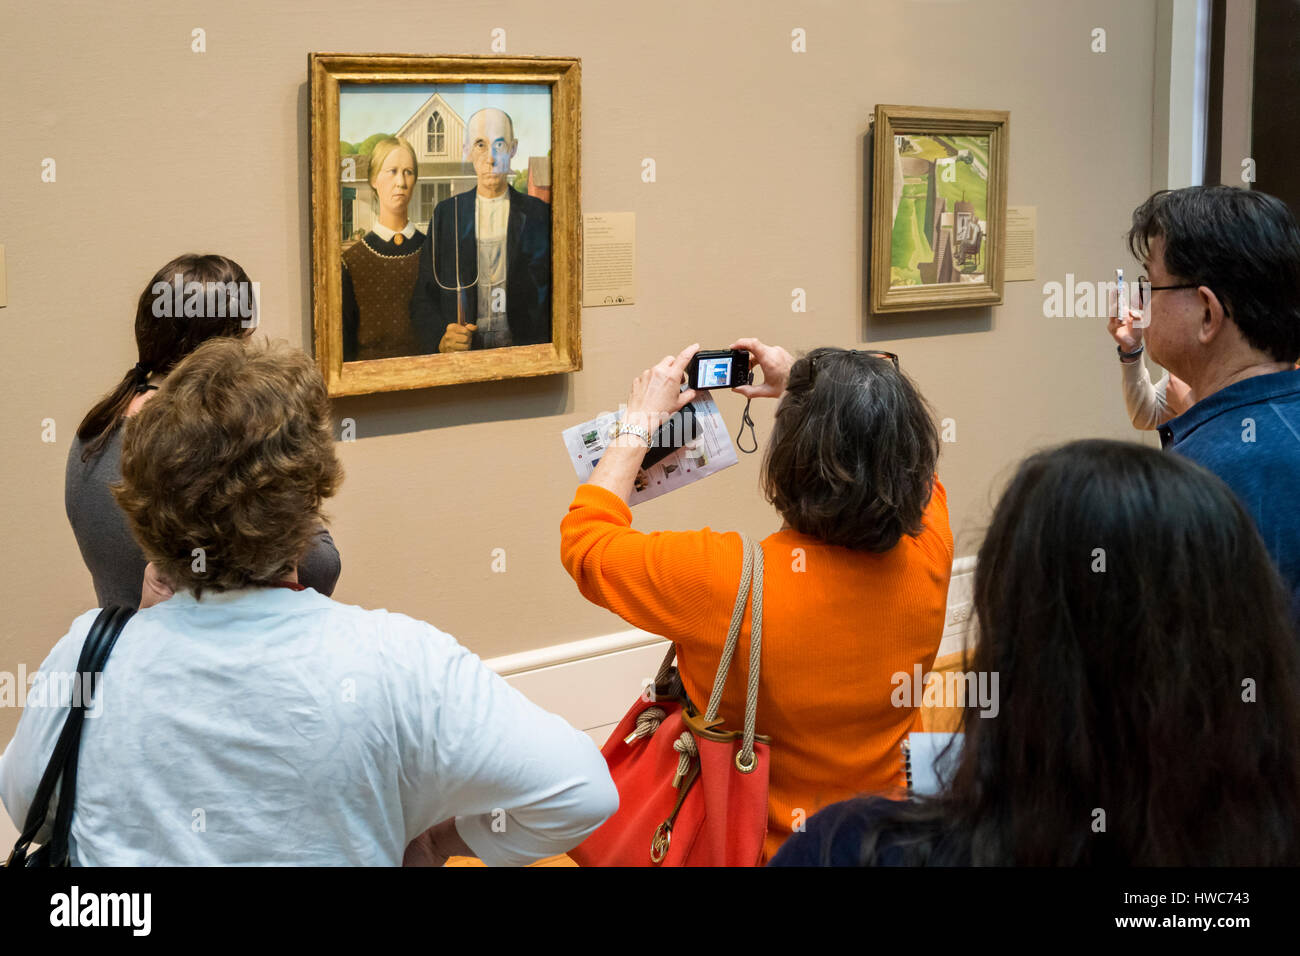 Las personas mirando American Gothic por Grant Wood en el Instituto de Arte de Chicago. Foto de stock